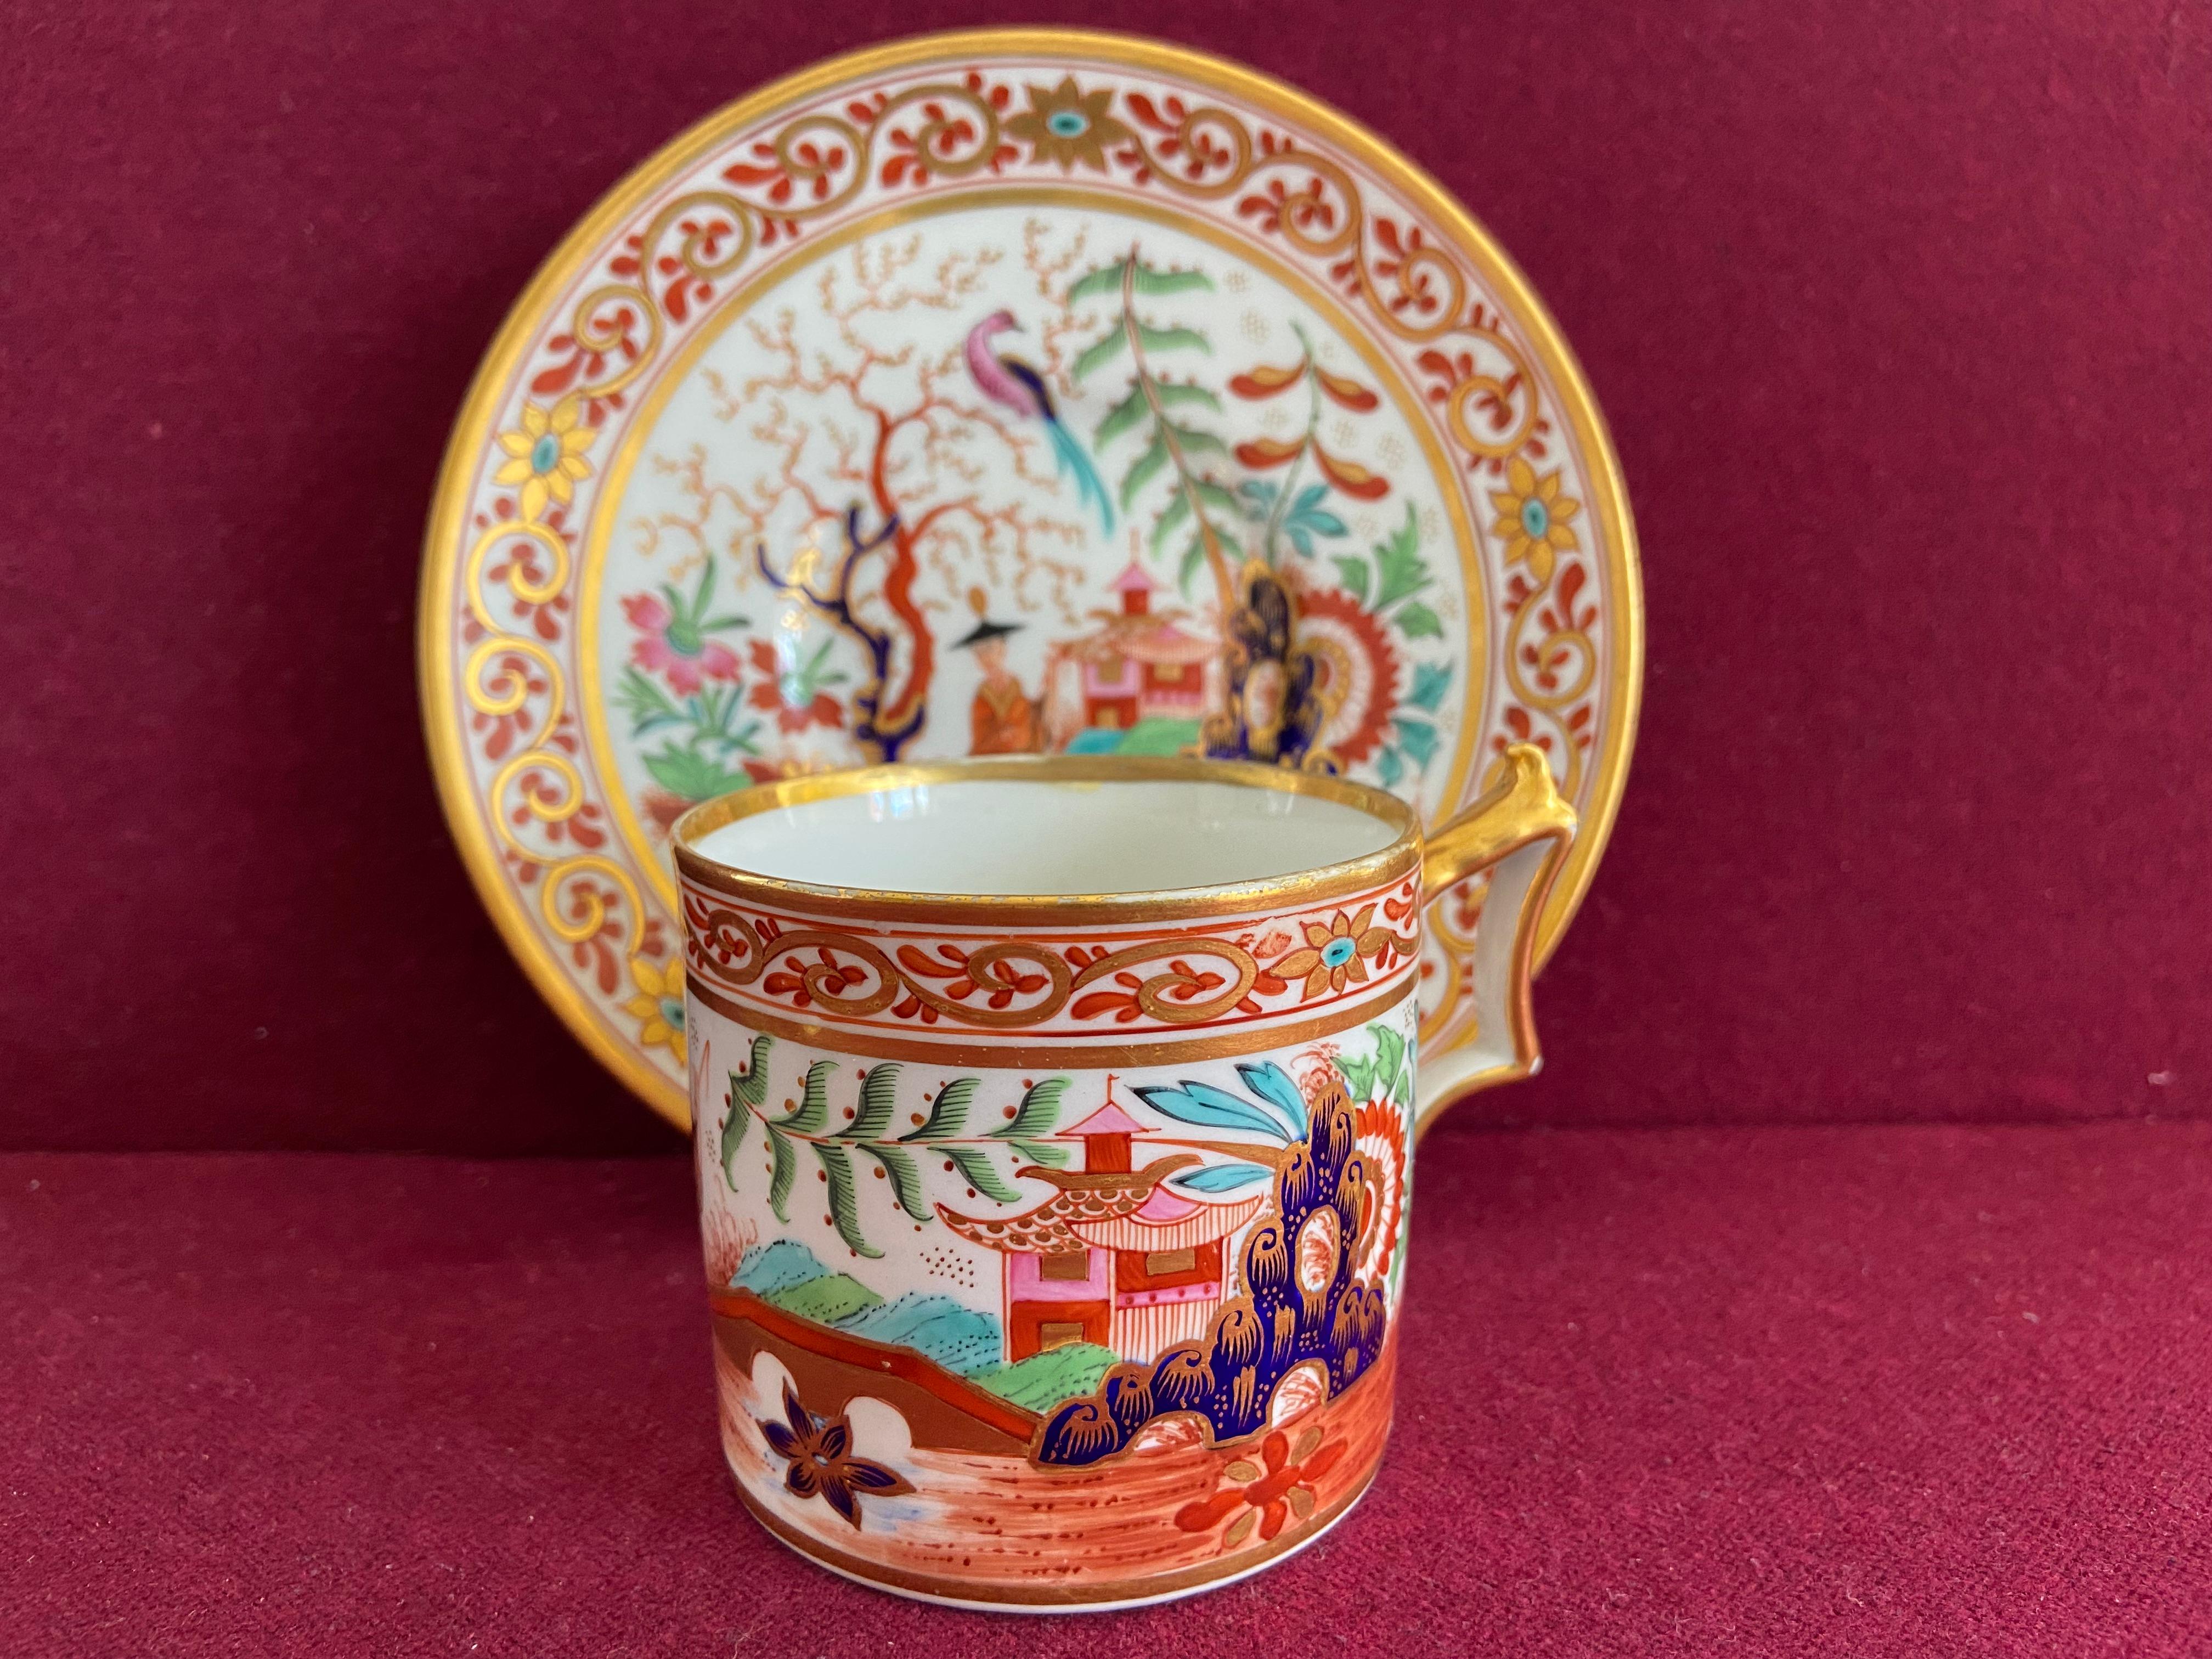 Canette à café et soucoupe en porcelaine de Worcester de Flight Barr and Barr c.1815-1820. Finement décoré d'un audacieux motif japonais.

État : excellent.